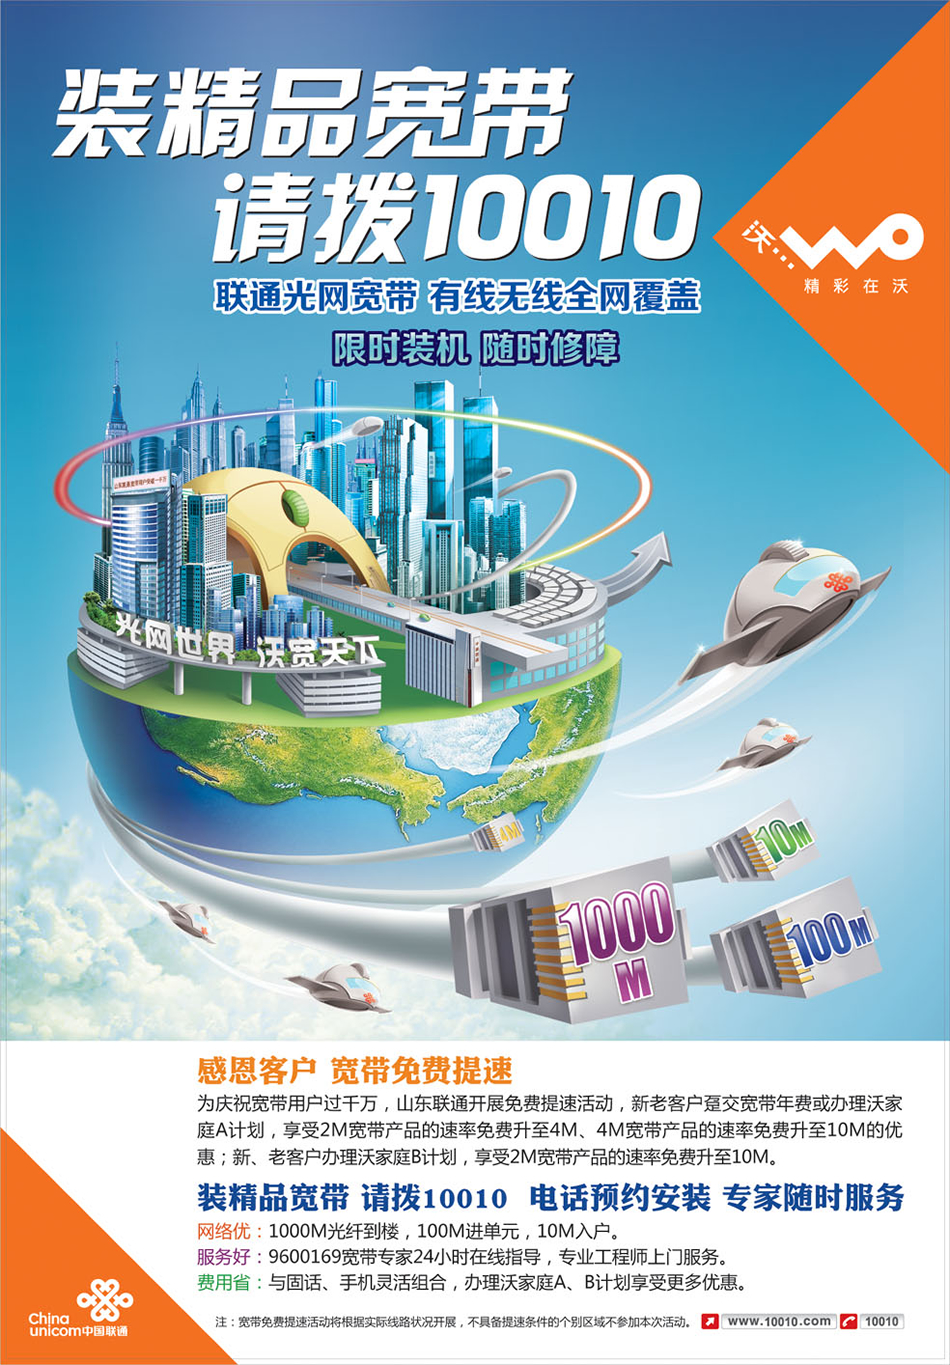 中国联通 装精品宽带 请拨10010，联通光网宽网宽带，有线无线全网覆盖，感恩客户宽带免费提速。